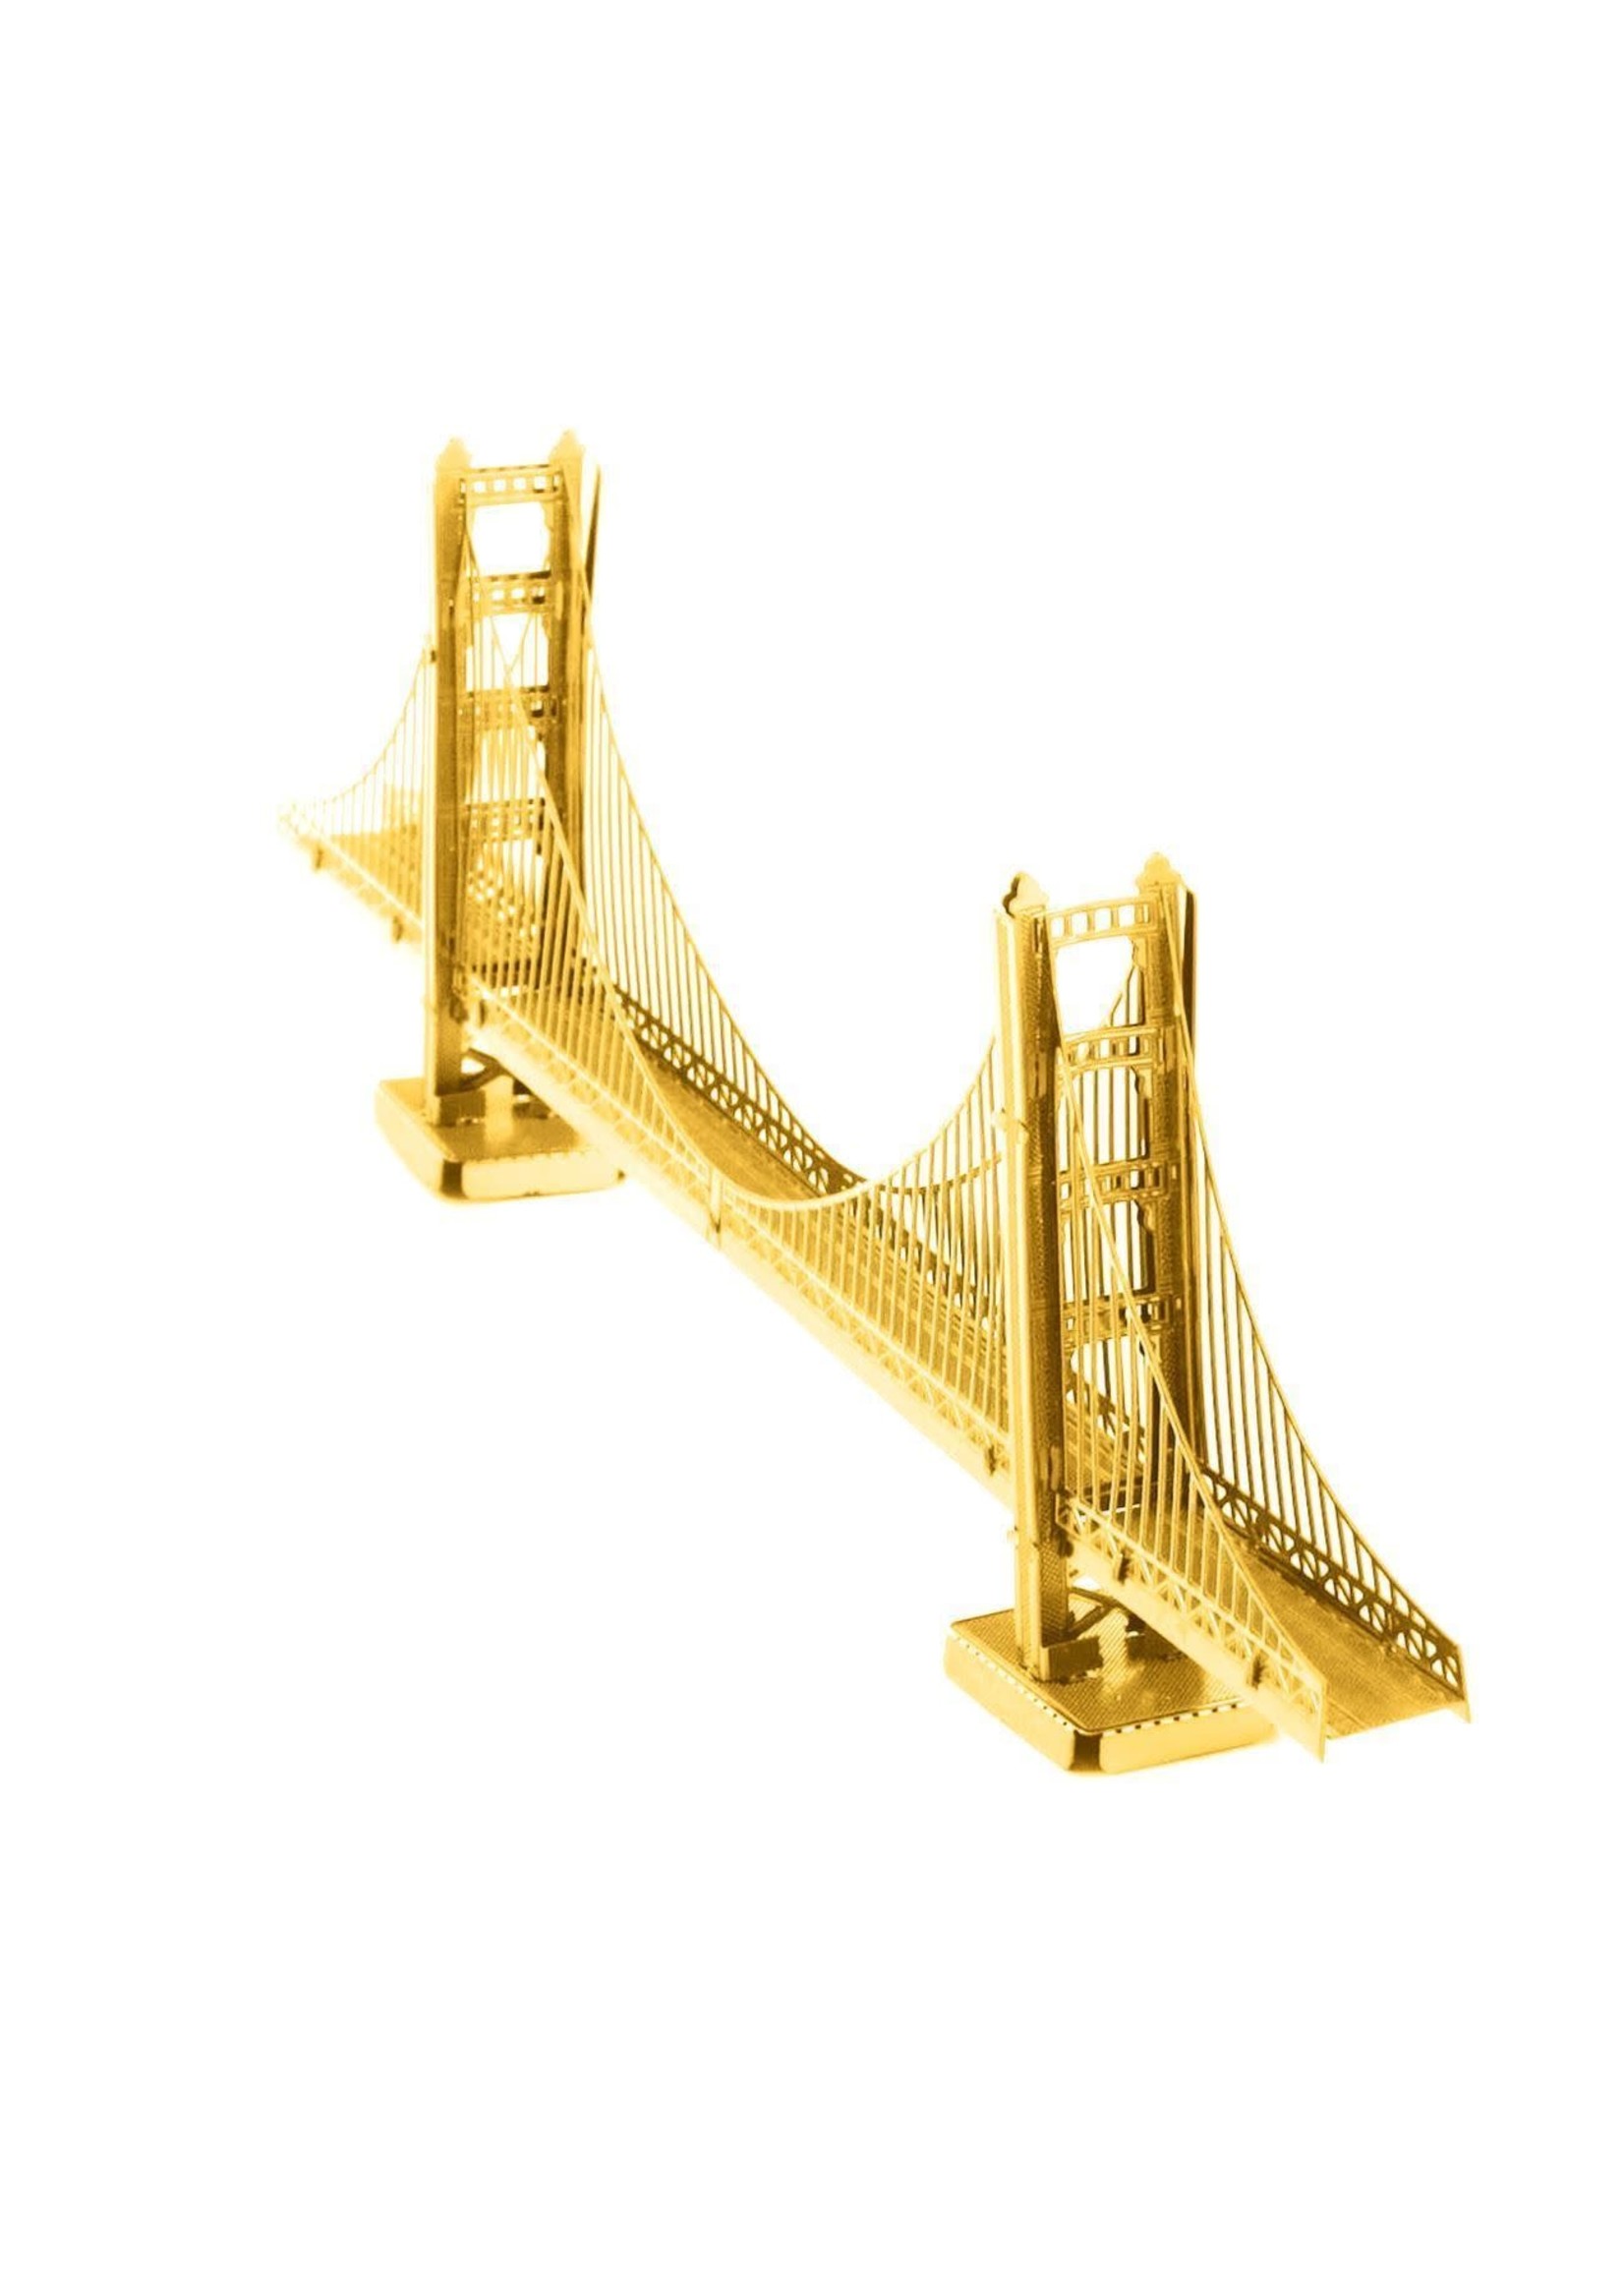 MetalWorks Golden Gate BridgeGL